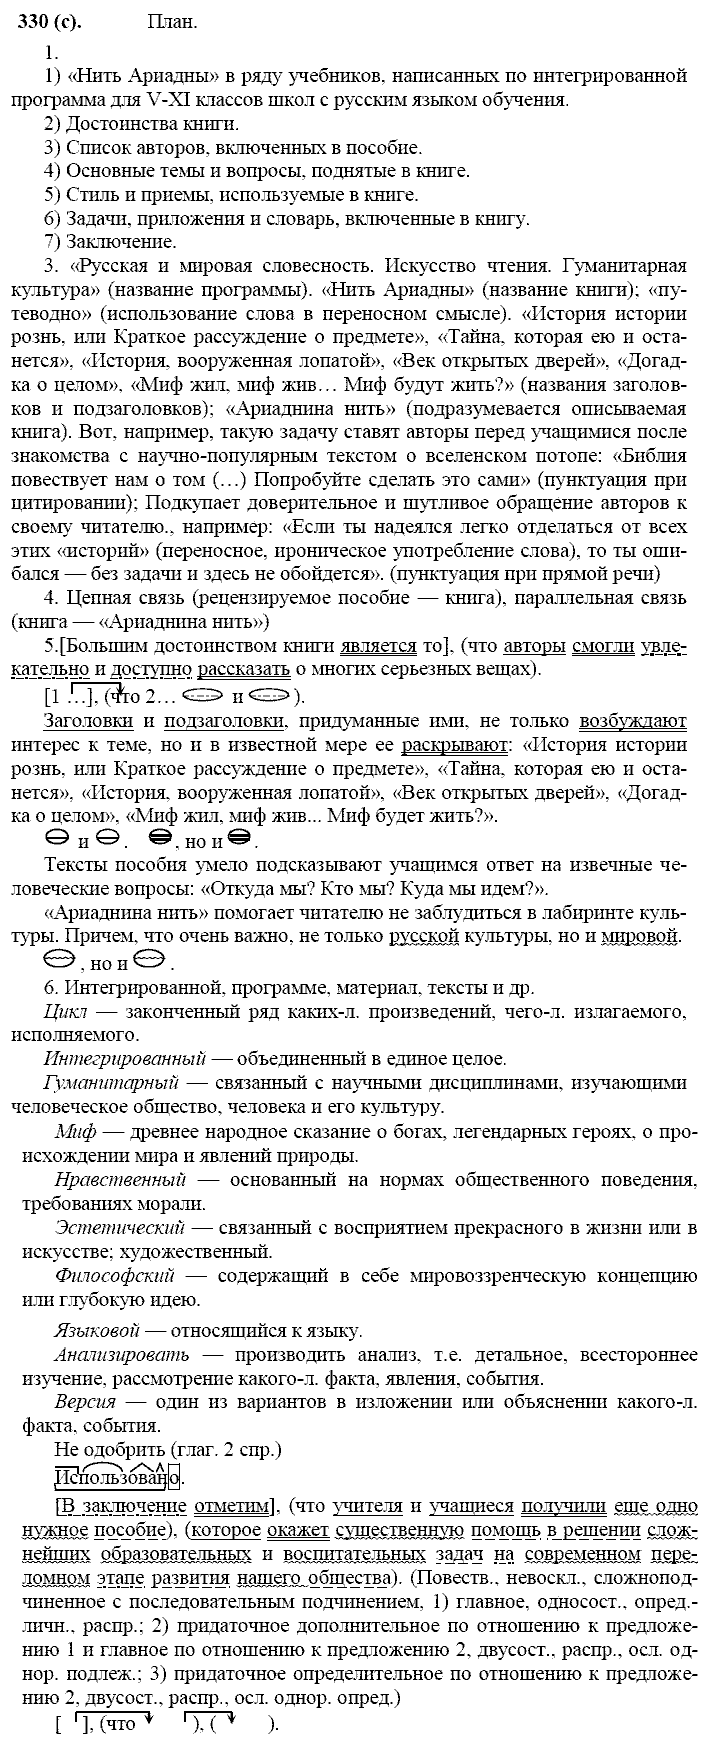 Русский язык, 11 класс, Власенков, Рыбченков, 2009-2014, задание: 330 (с)